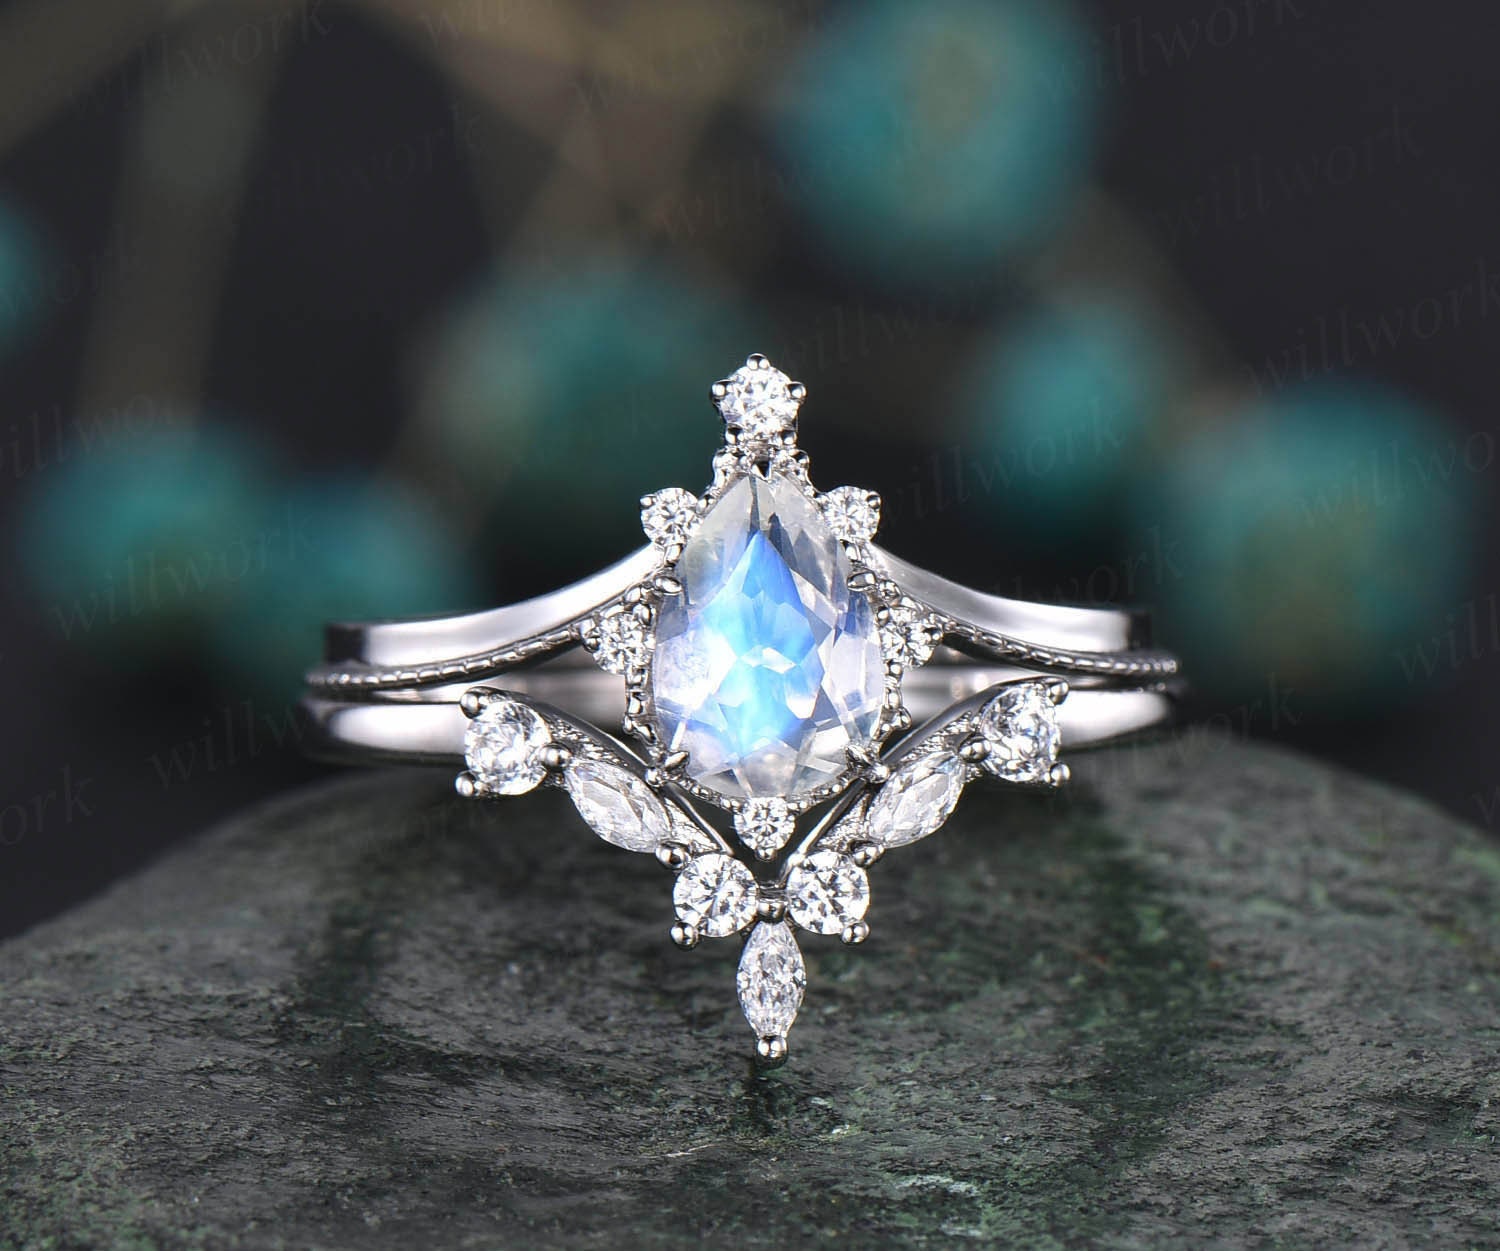 Oval Cut Moonstone Engagement Ring Vintage White Gold Moonstone Ring  Diamond Wedding Ring Milgrain Moissanite Anniversary Ring for Women - Etsy